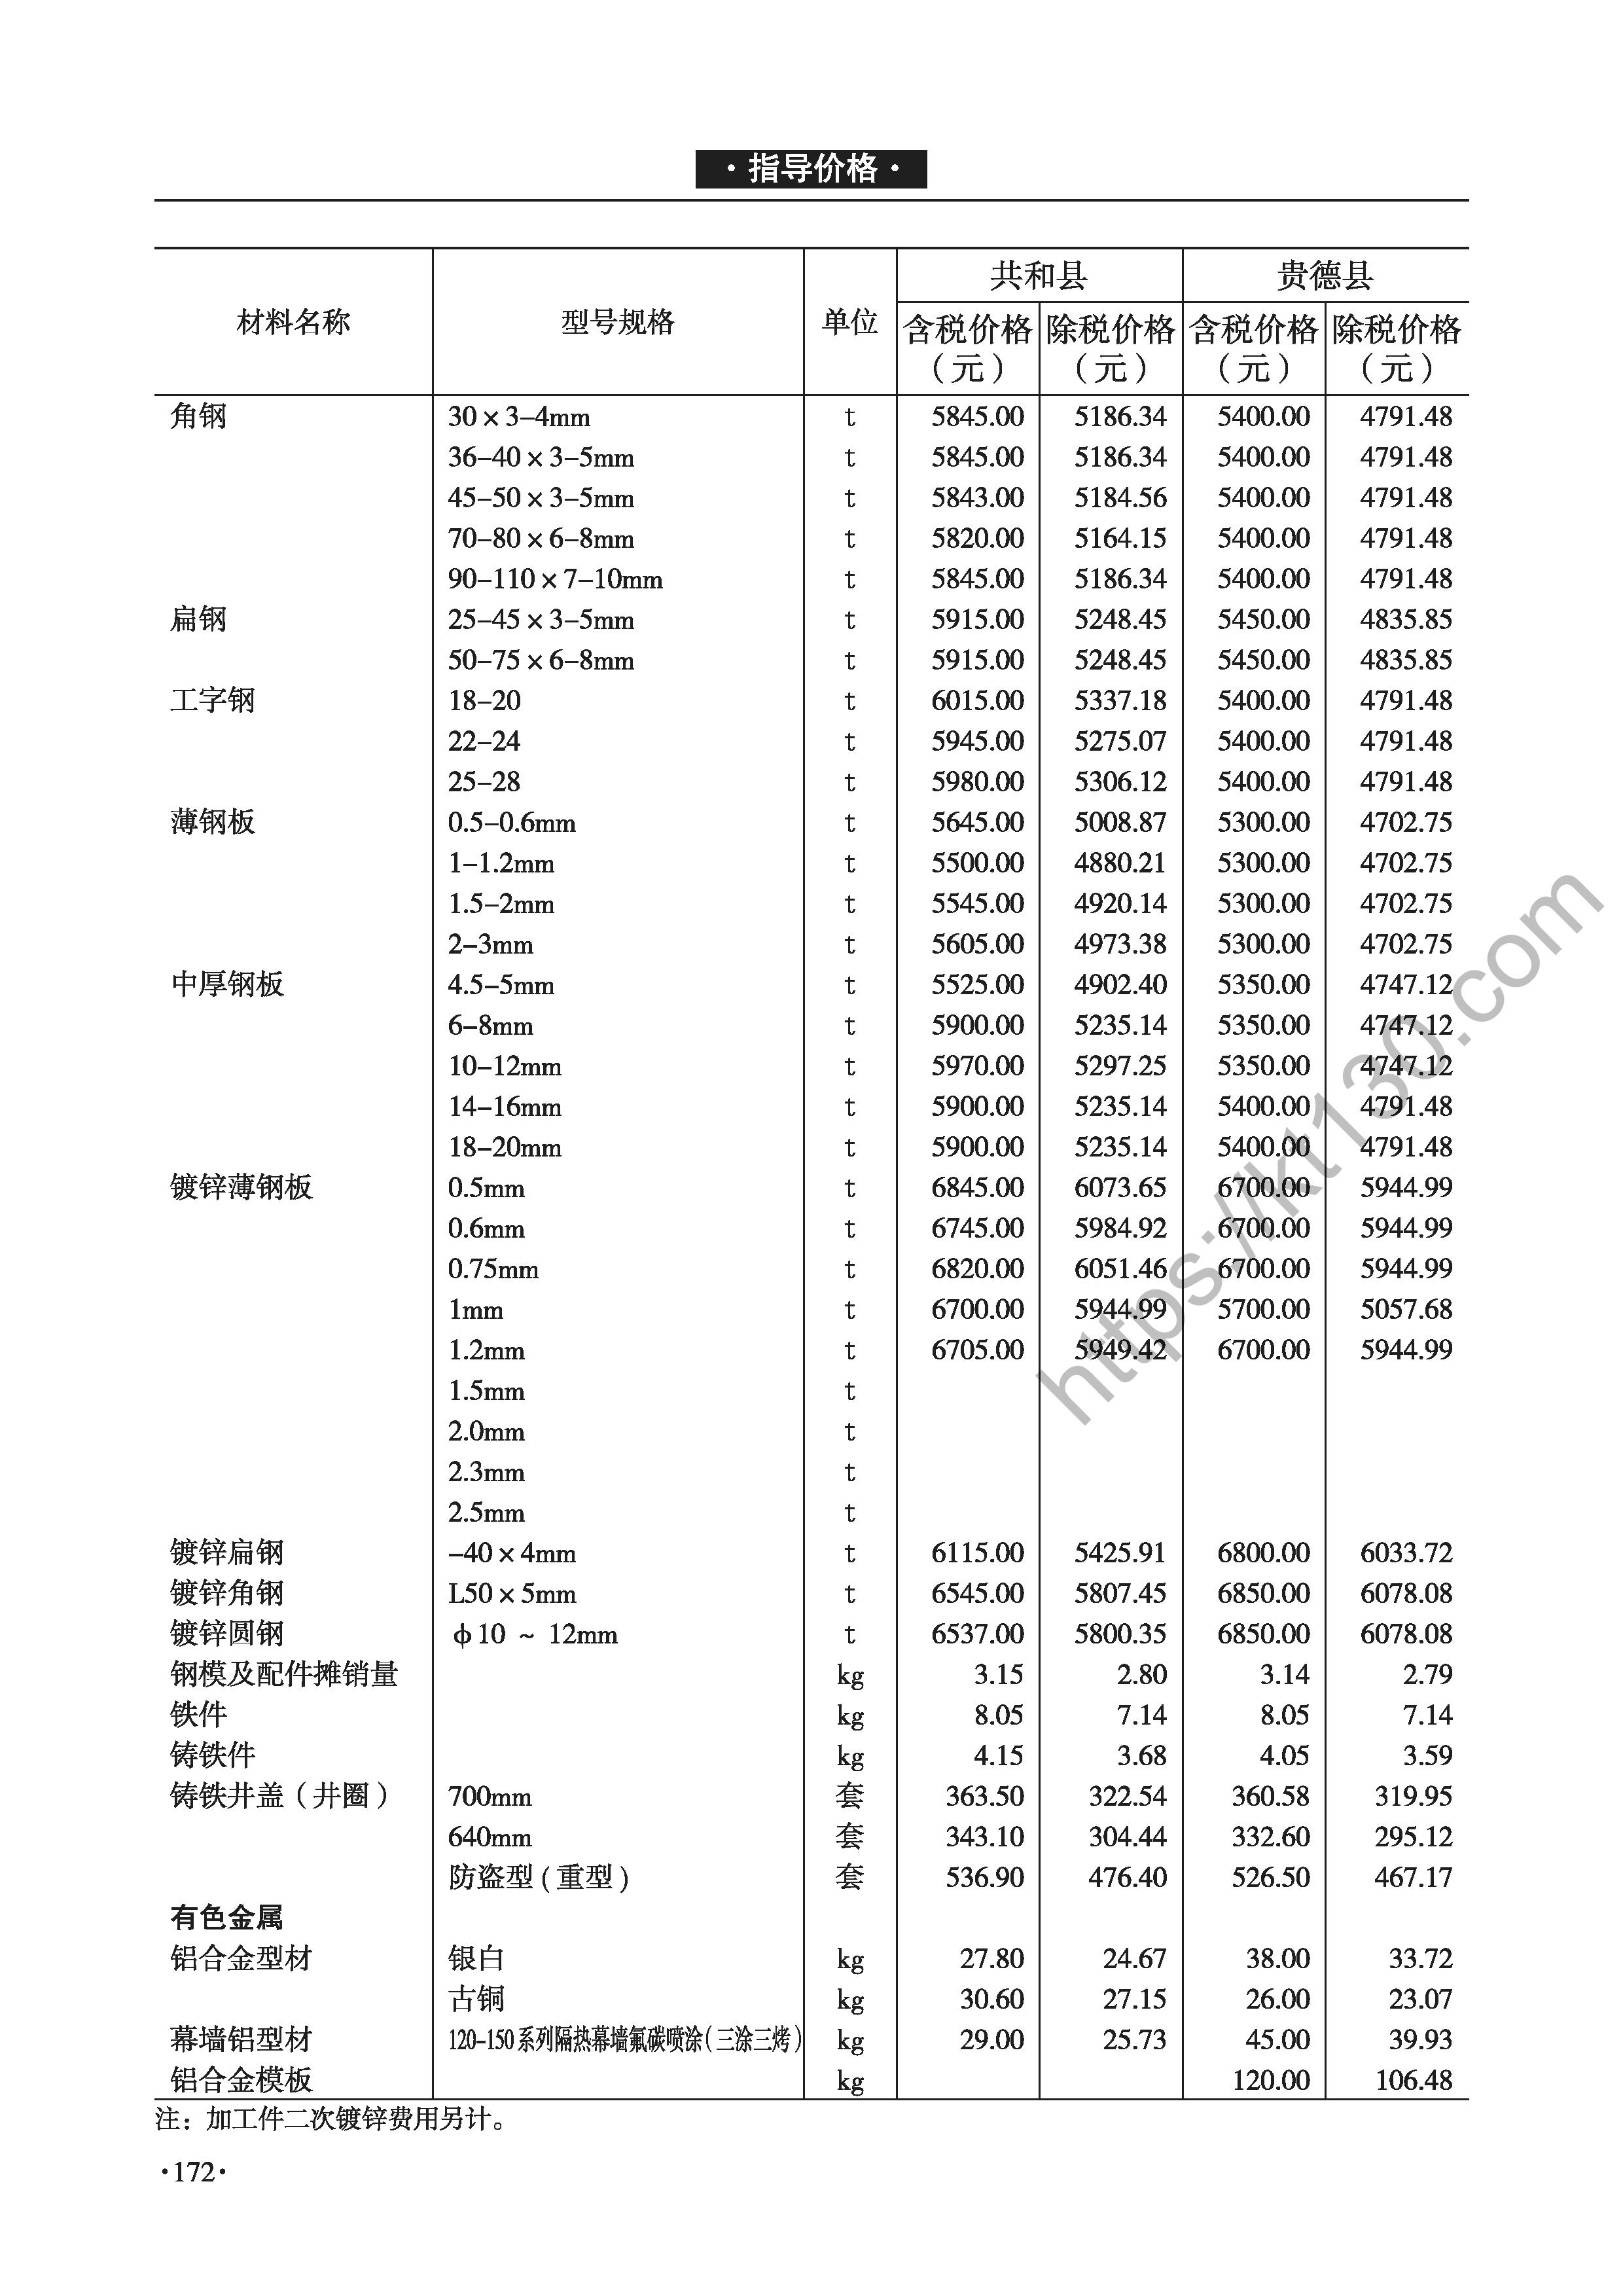 青海省2022年3-4月建筑材料价_中厚钢板_46865